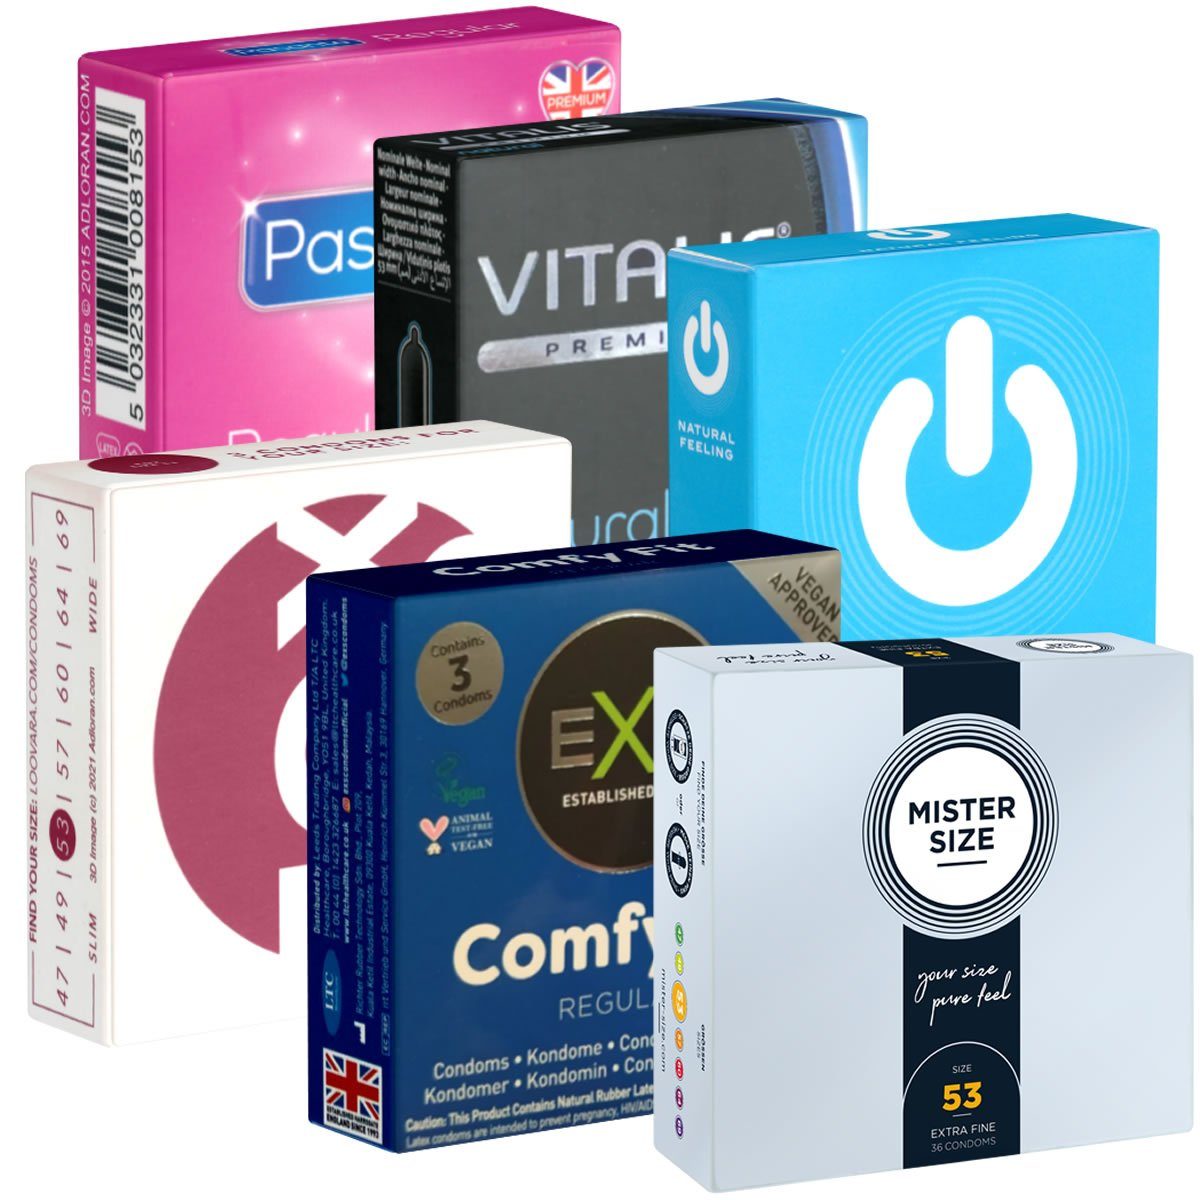 Kondomotheke Kondome SIXPACK 6 Packungen ganz normale Kondome, insgesamt, 18 St., natürliche Kondome, Probierset, Testset, Standardkondome, einfache Kondome ohne Extras und in mittlerer Größe